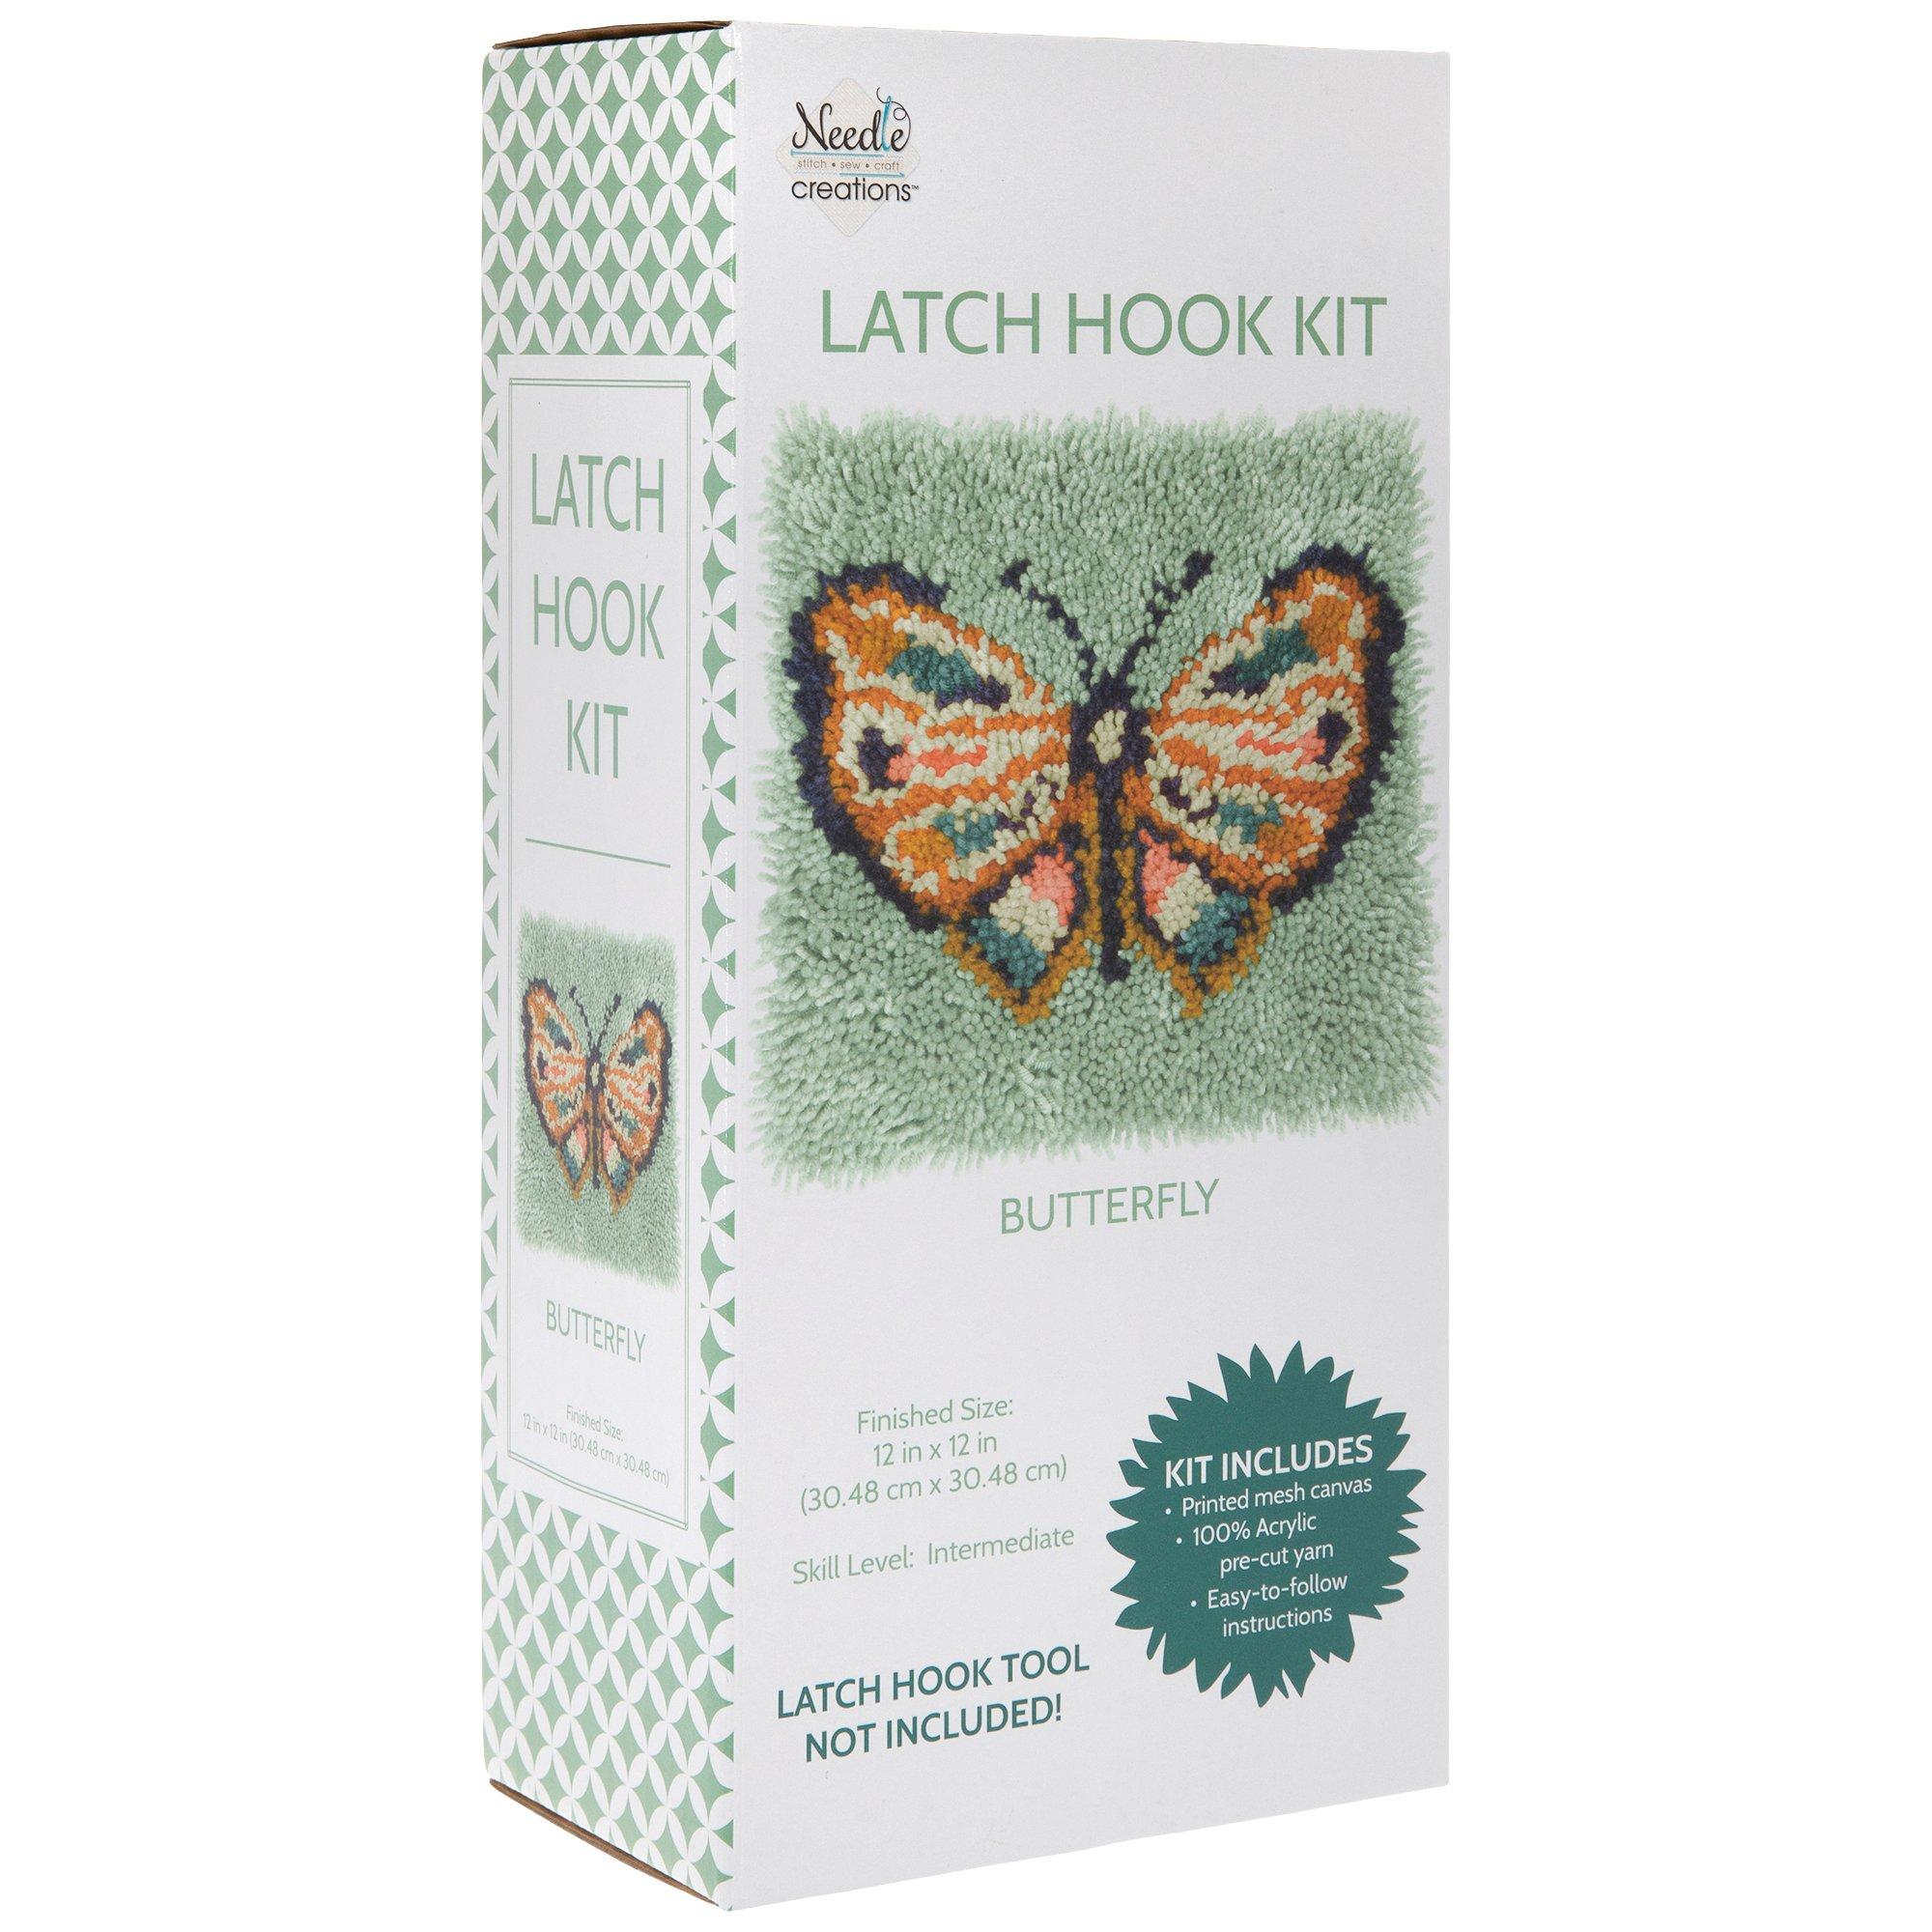 Wonderart Butterfly Latch Hook Kit, 8 x 8